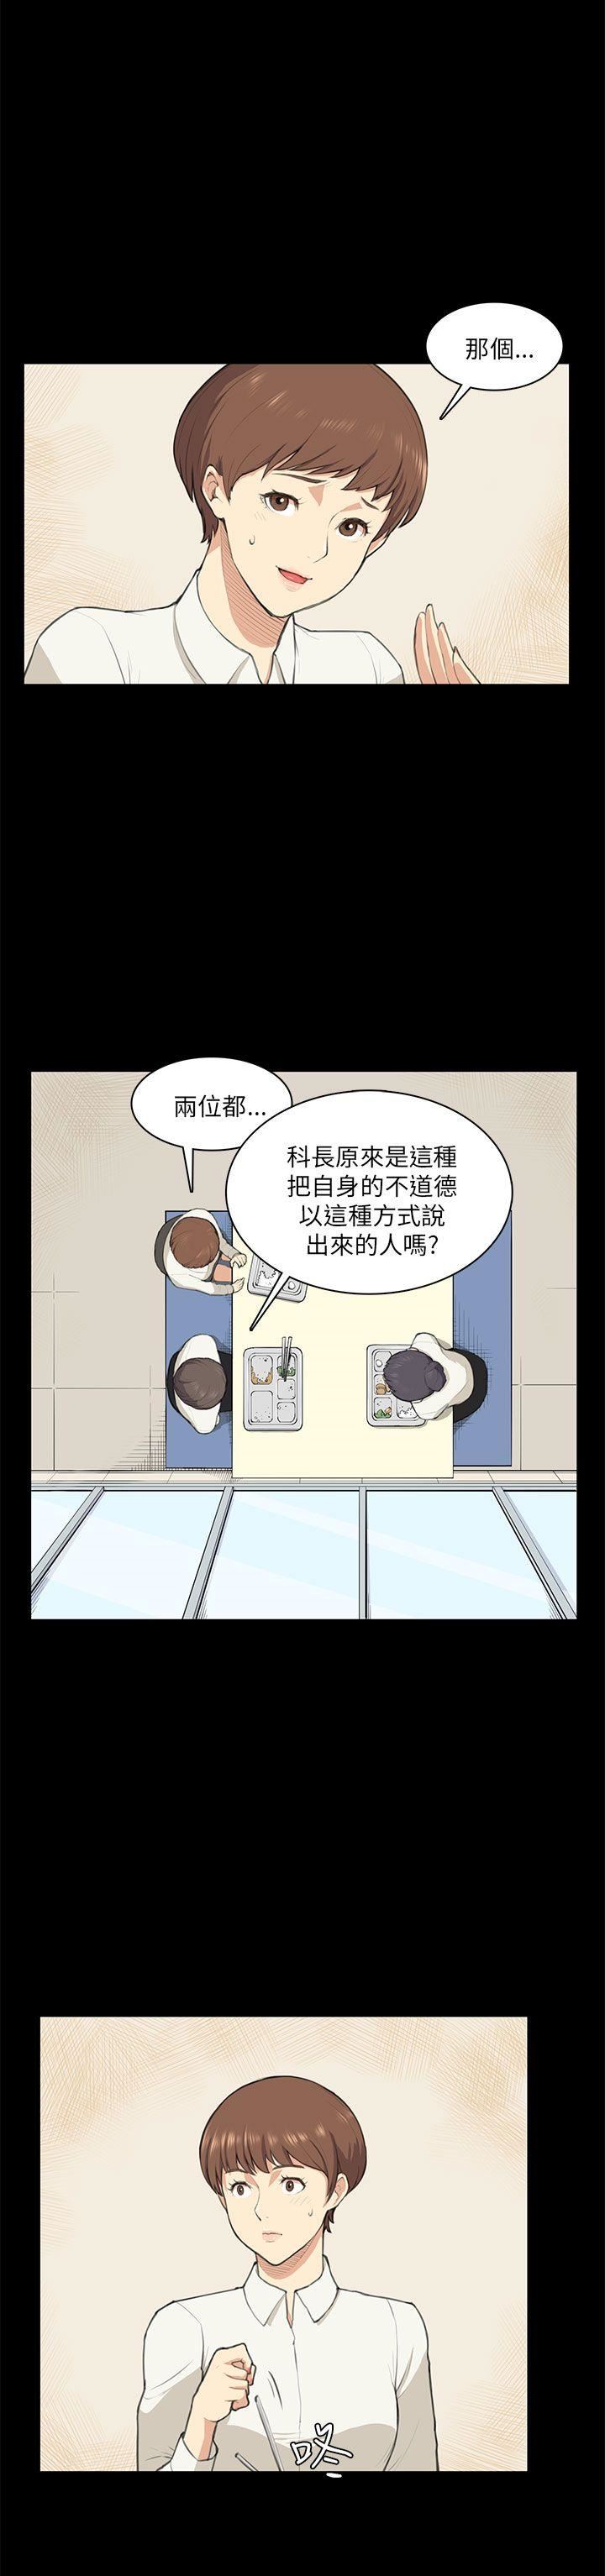 韩国污漫画 斯德哥爾摩癥候群 第10话 7